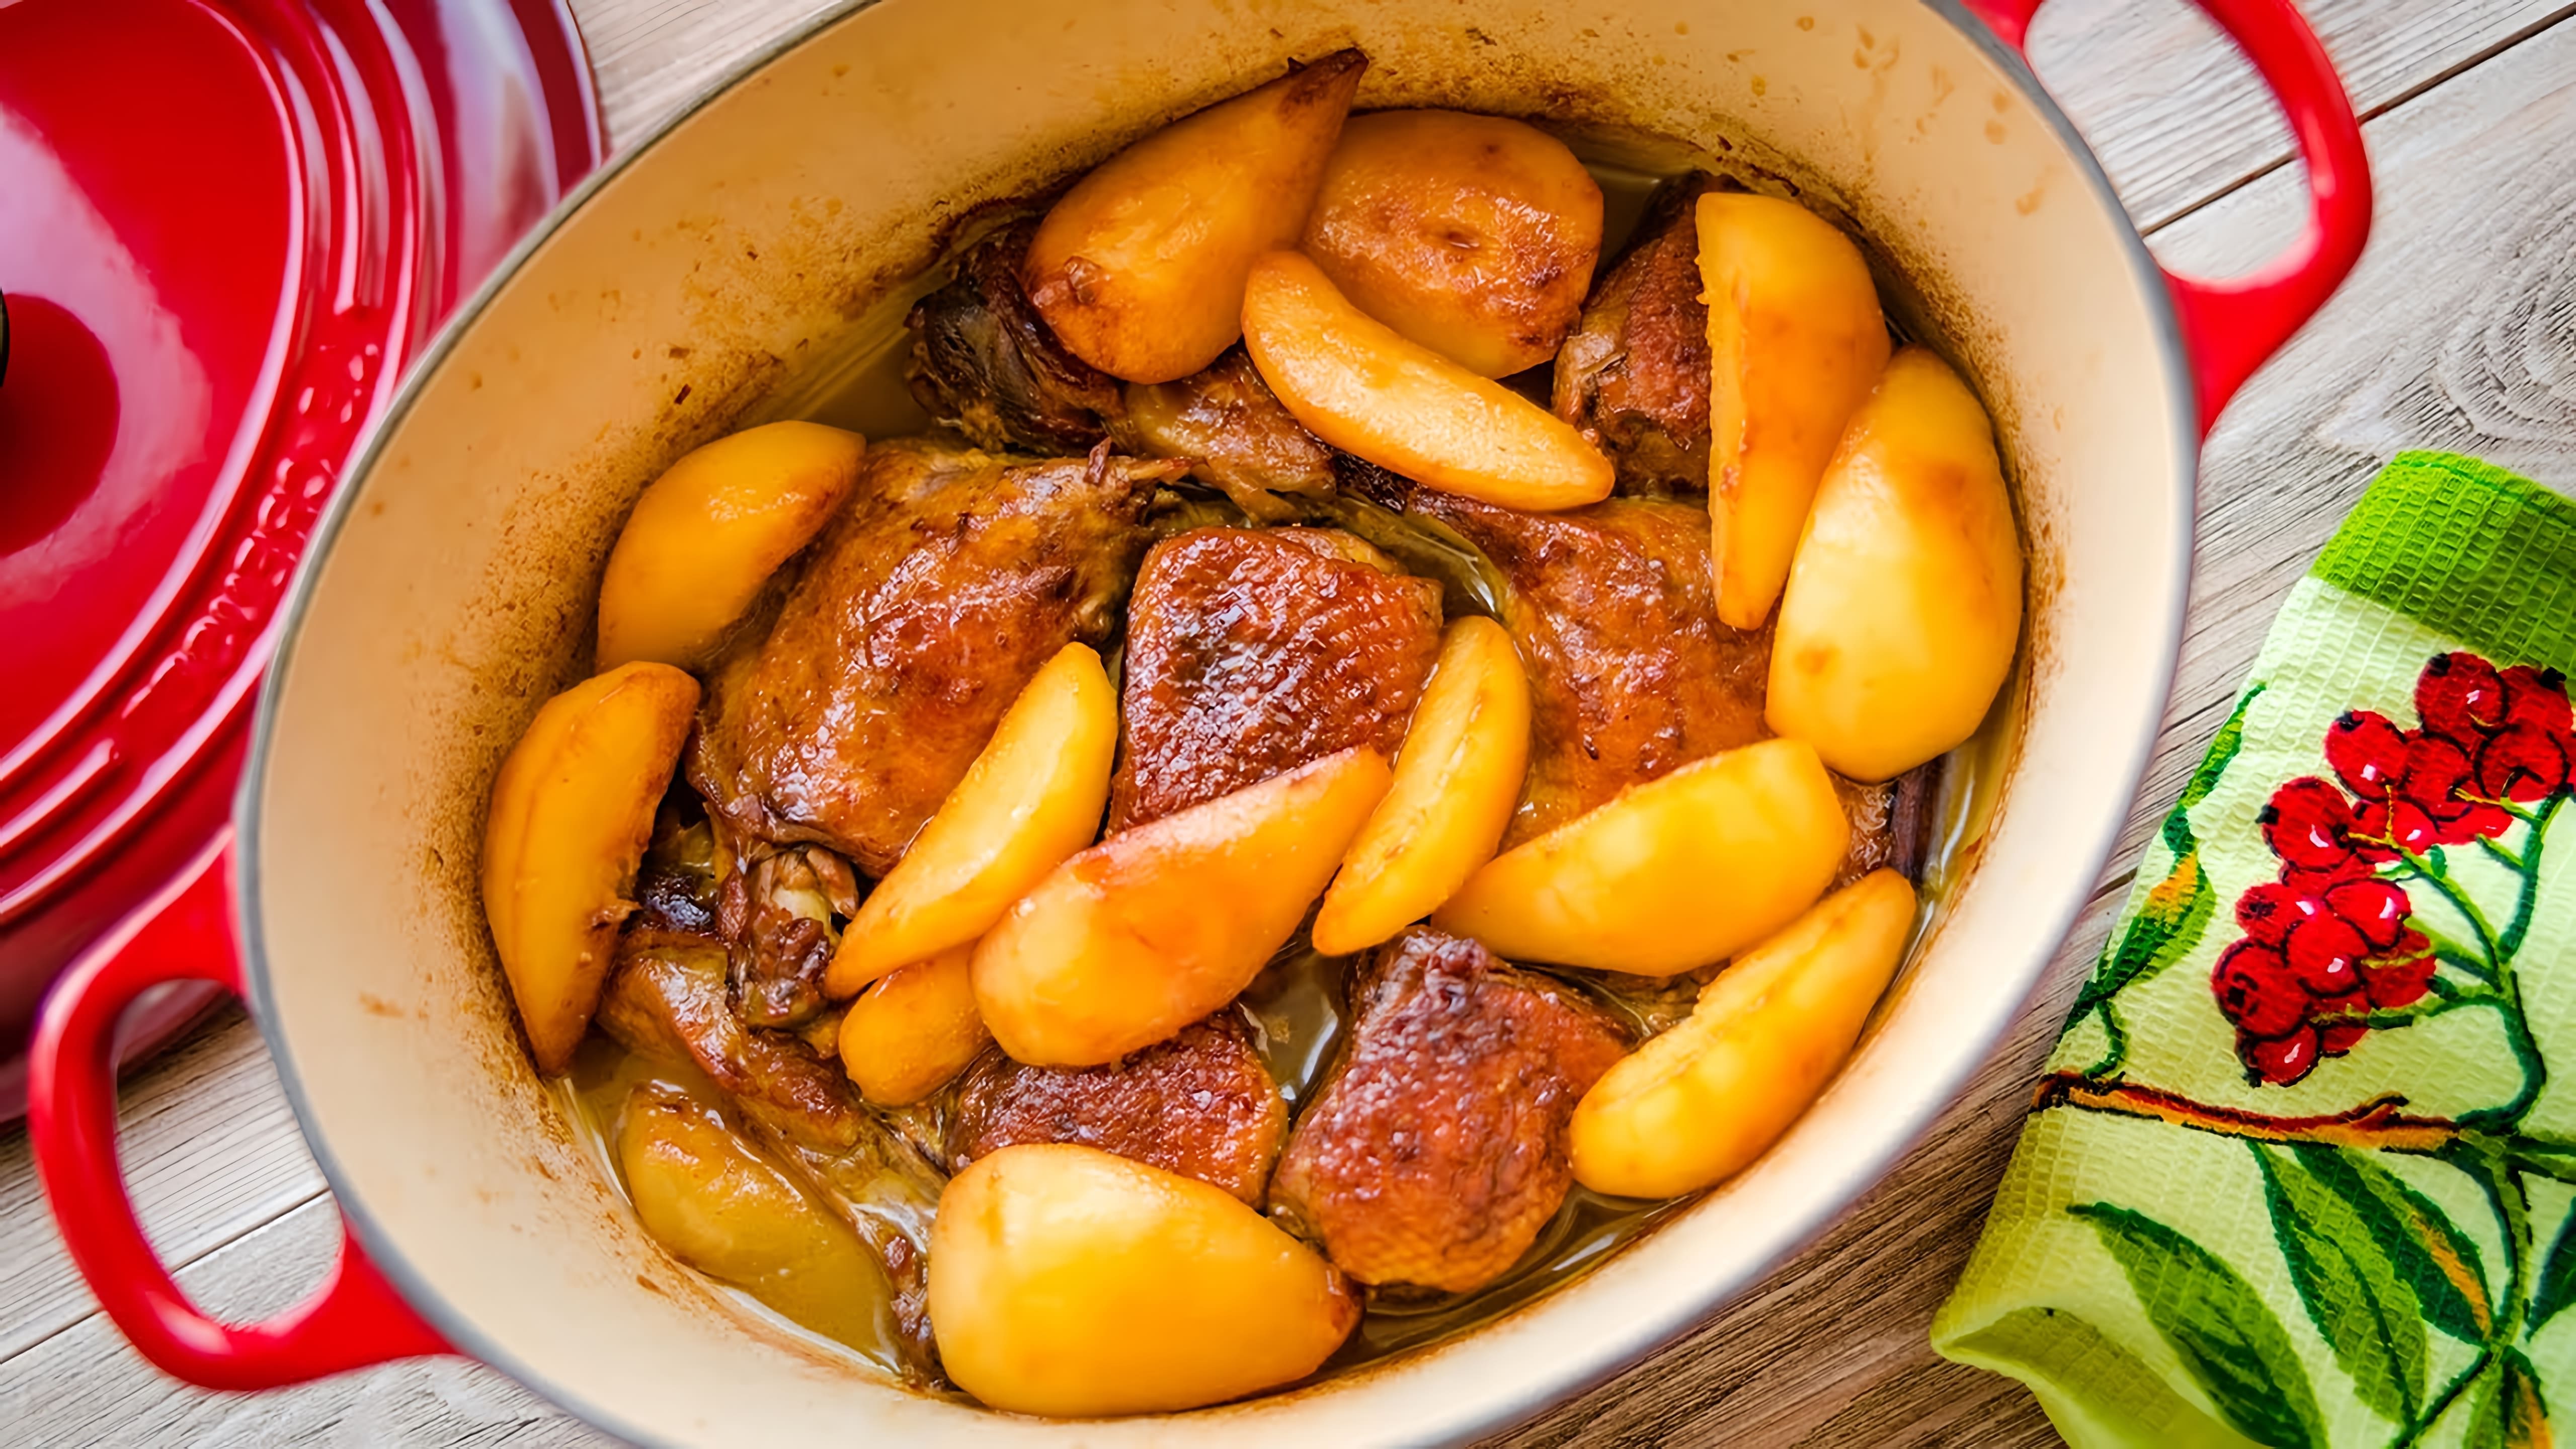 В этом видео демонстрируется рецепт приготовления утки с медовыми грушами или яблоками